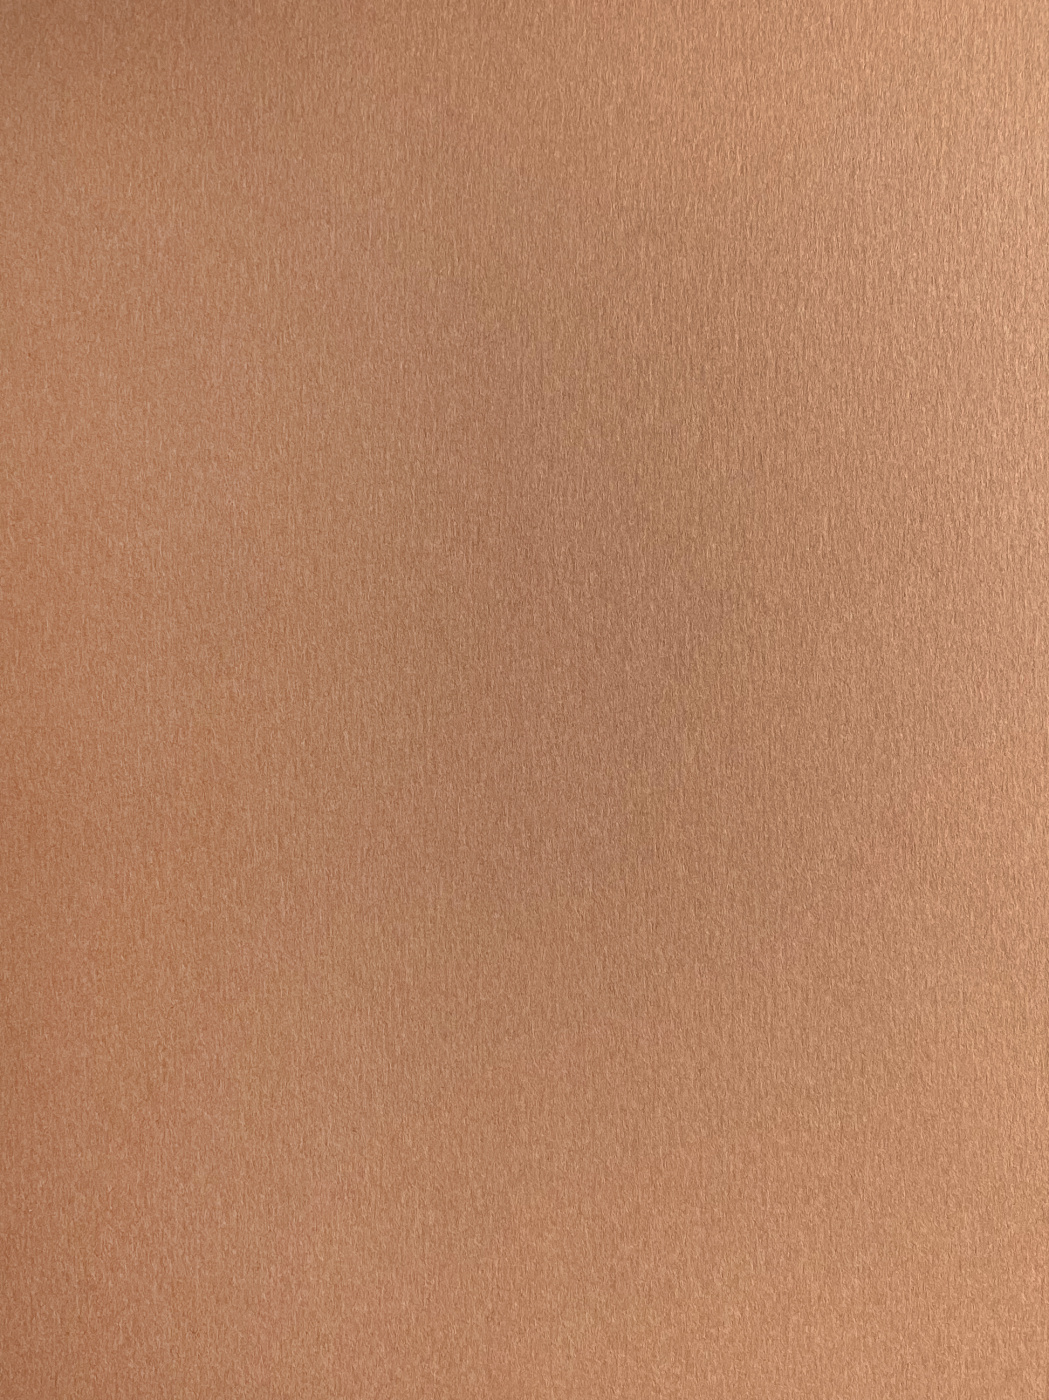 Бумага для пастели Малевичъ GrafArt А3 270 г, коричневая светлая бумага для пастели малевичъ grafart а4 270 г коричневая